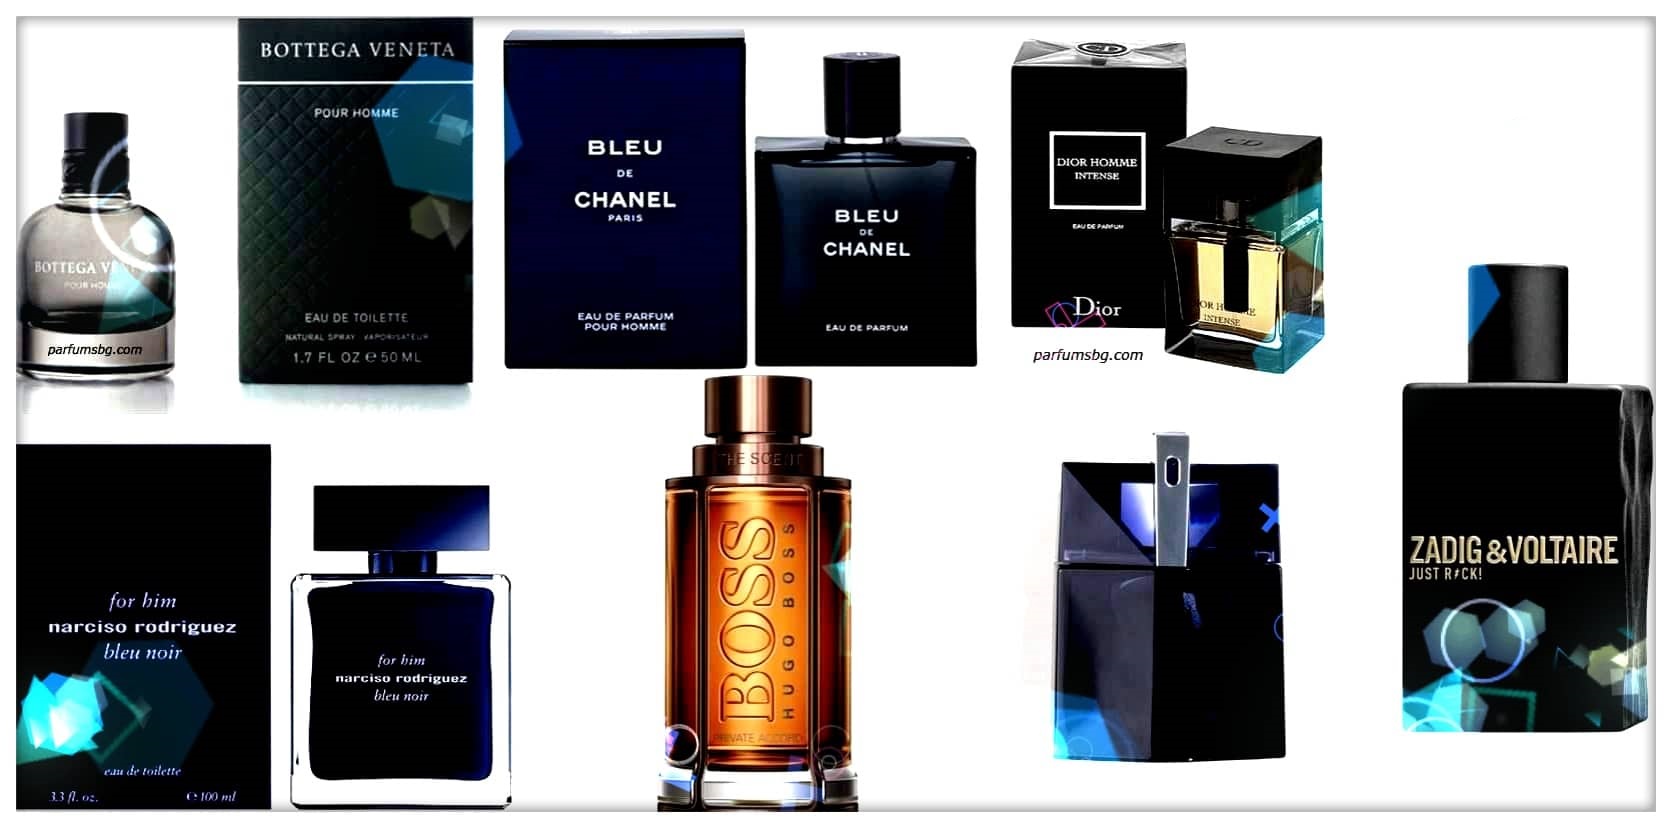 летни парфюми, мъжки летен парфюм, летни парфюми 2019, парфюми, парфюм, парфюмерия, козметика, мъжки парфюми, дамски парфюми, оригинални, тестер, тестери, tester, testeri, парфюмбг, парфюмибг, parfum, parfumibg, perfumes, perfume, cozmetics, kozmetika, нови парфюми, маркови парфюми, маркова парфюмерия, онлайн парфюми, онлайн парфюми, онлайн парфюмерия, online parfumi